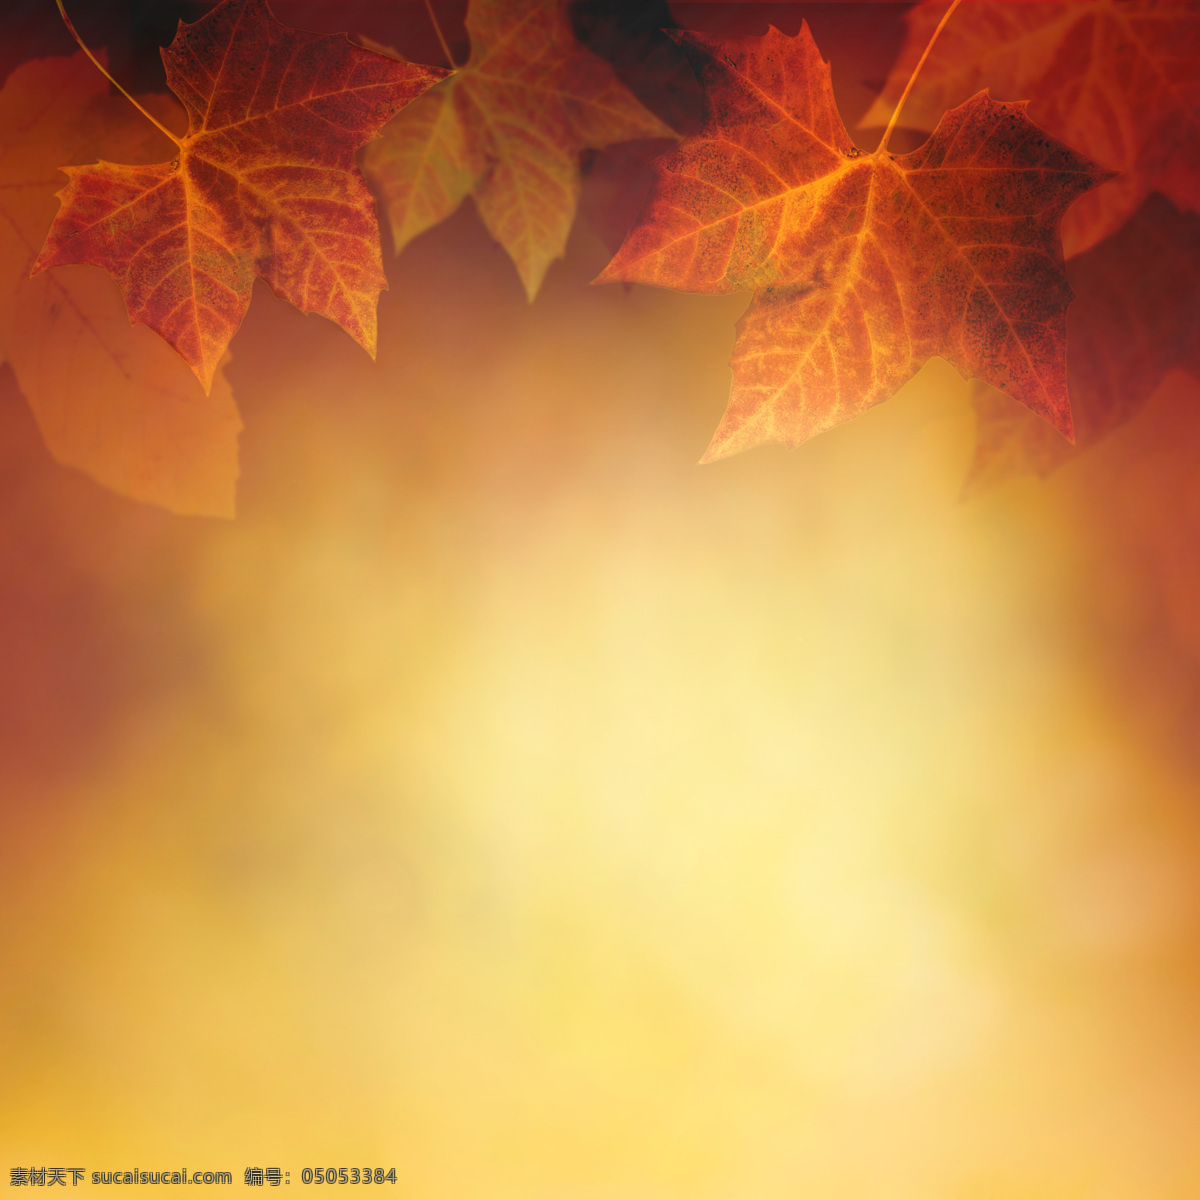 秋天 光斑 落叶 枫叶 秋天落叶 叶子 叶片 秋天主题 美丽自然风景 花草树木 生物世界